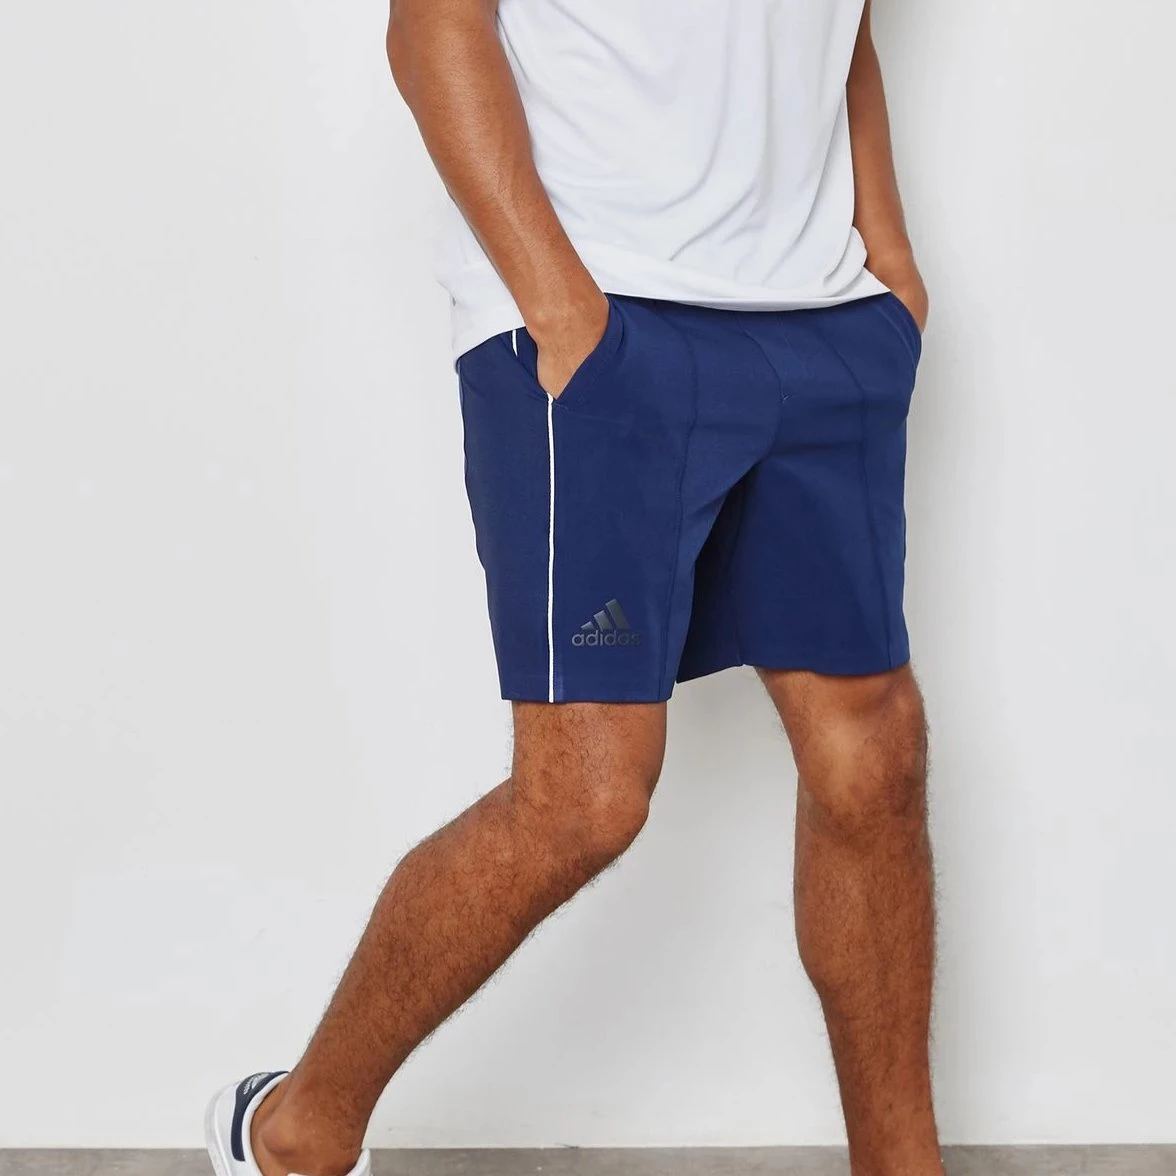 adidas tubular with shorts